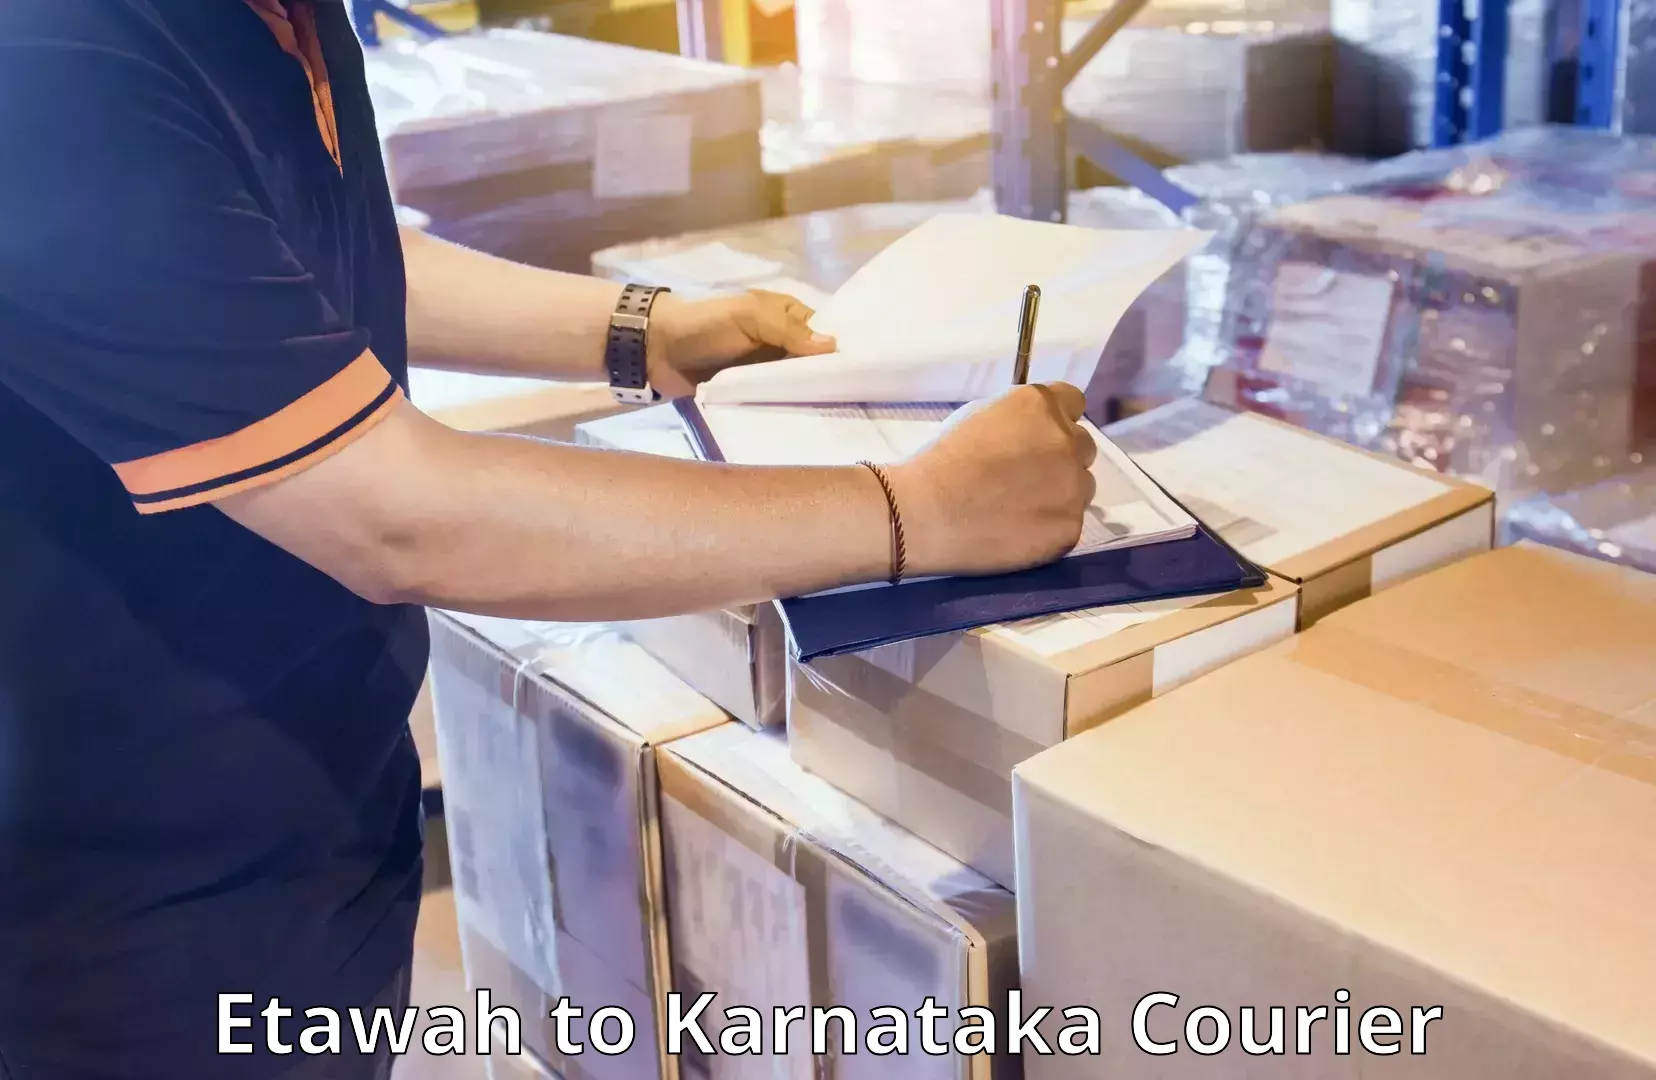 Baggage delivery management Etawah to Karnataka